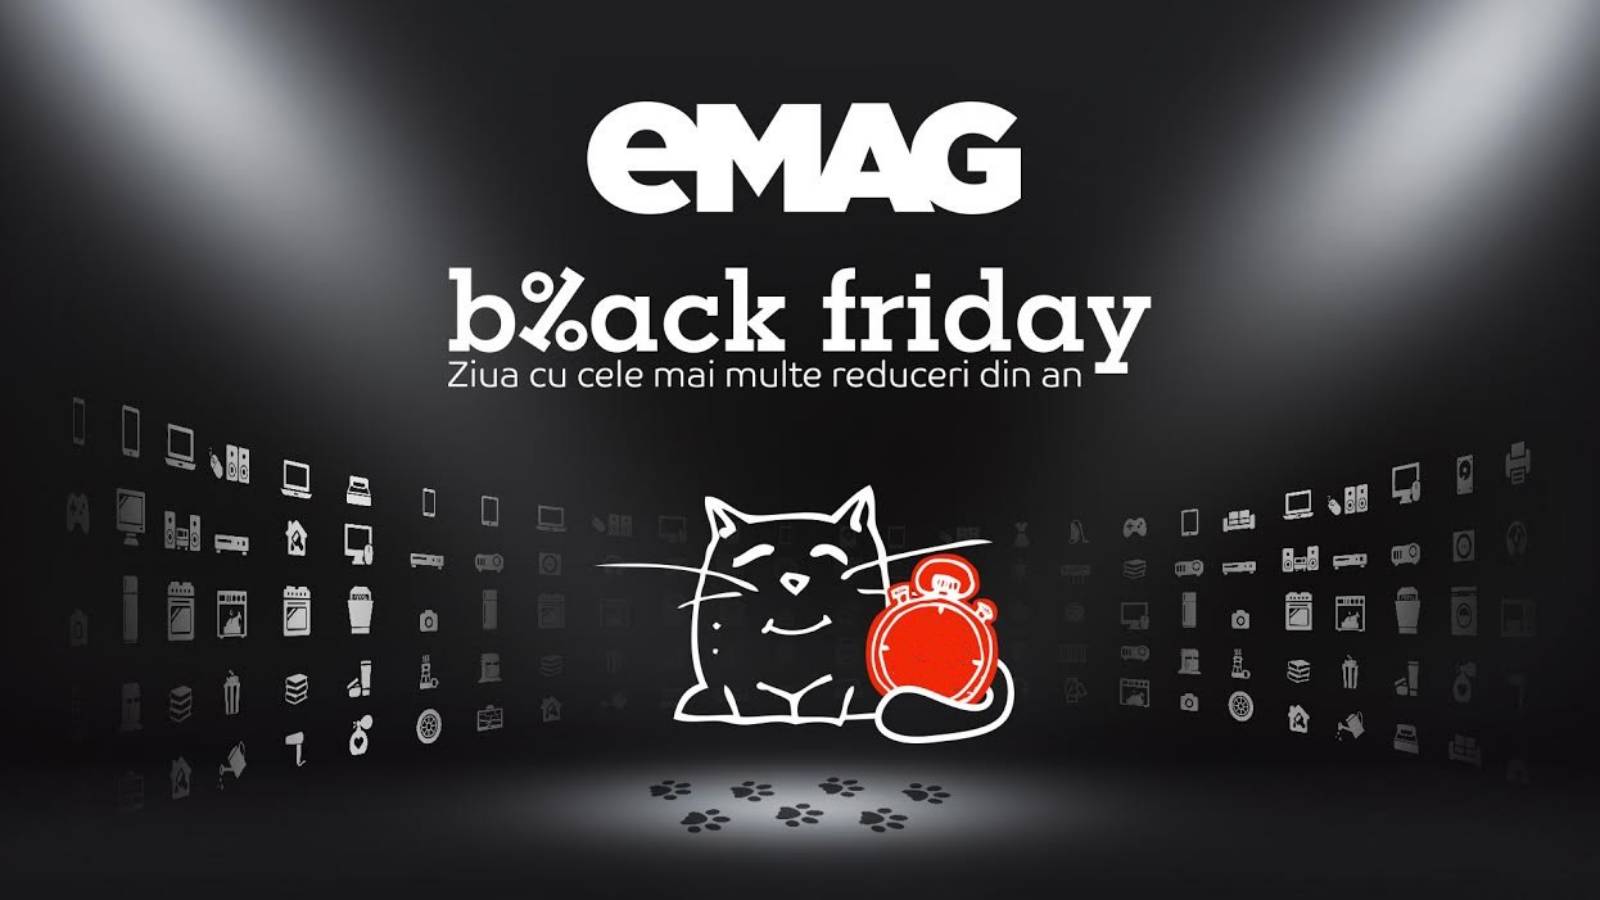 eMAG BLACK FRIDAY listet 30 Produktrabatte auf